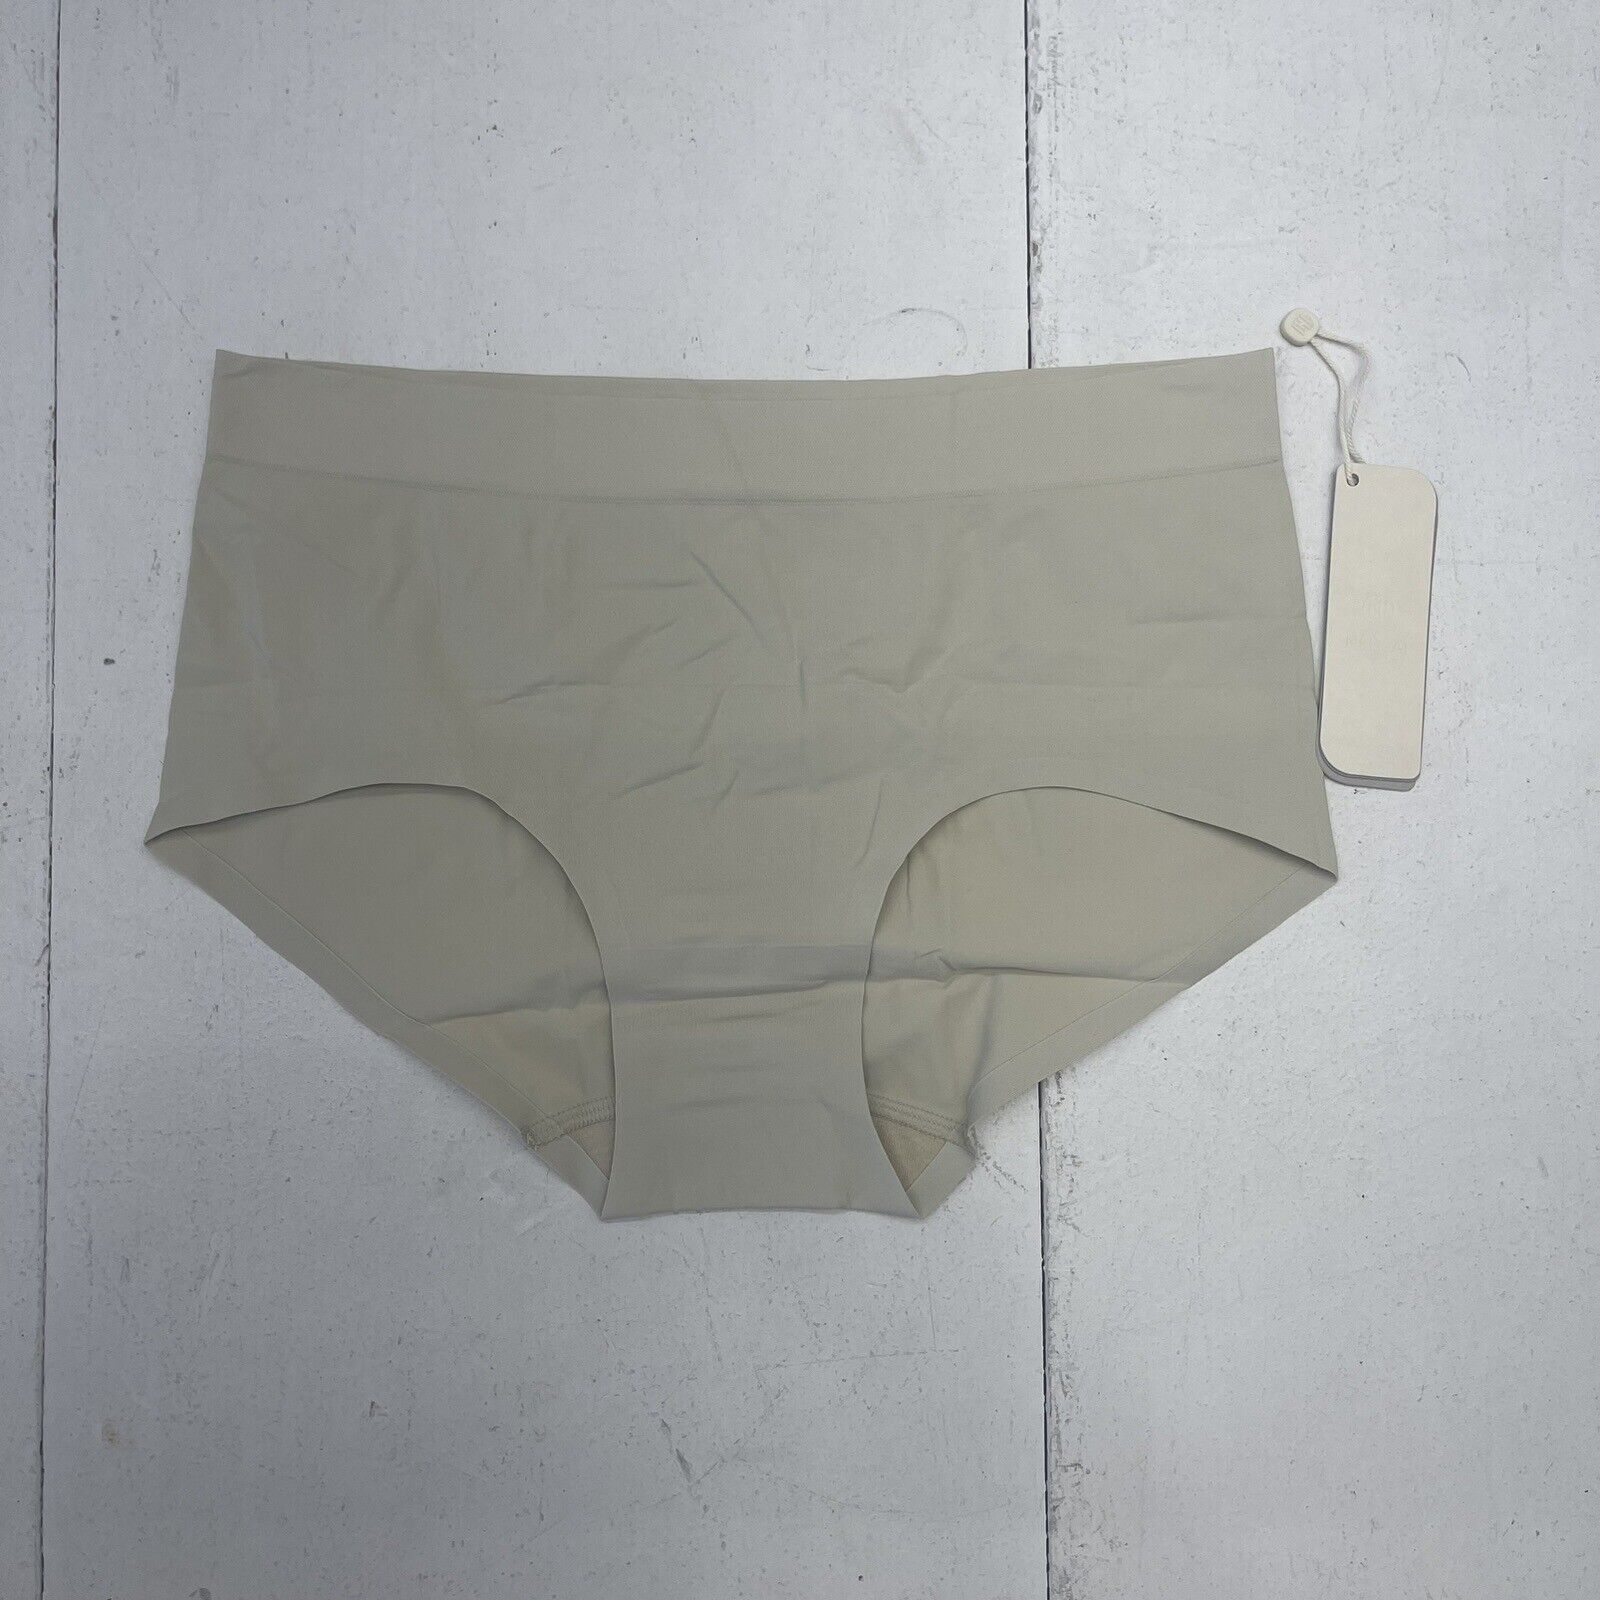 Armachillo Black Brief Underwear Women's Size 2X NEW - beyond exchange